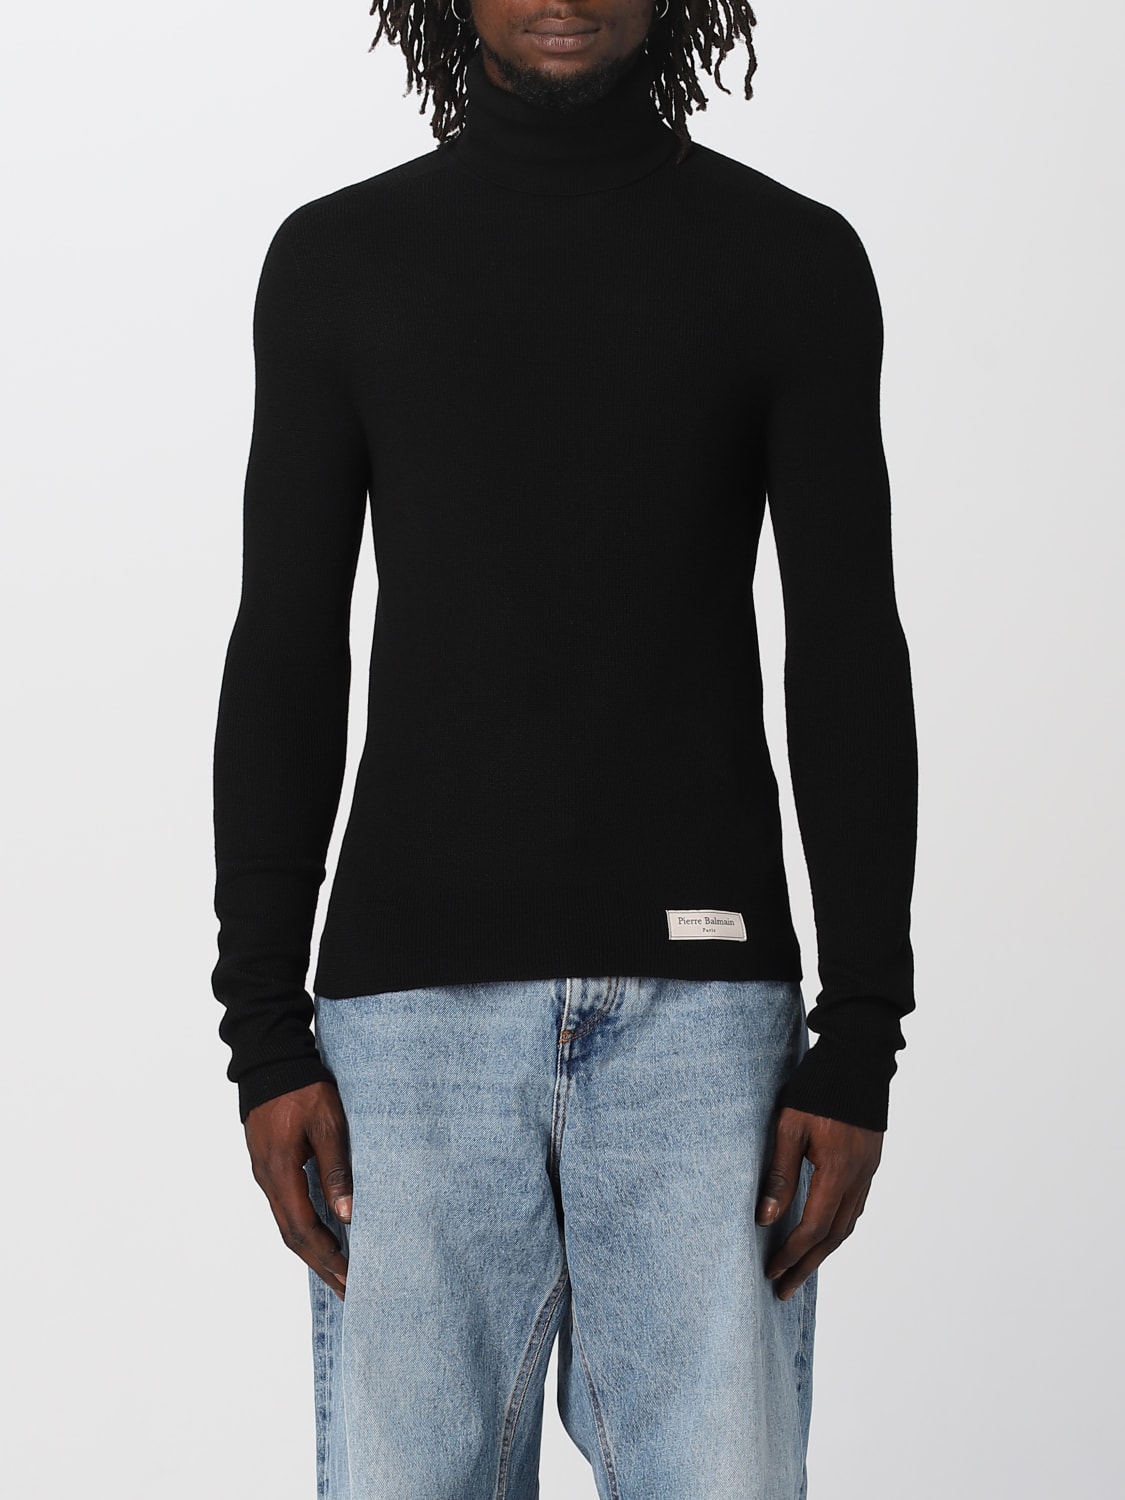 fluit rekruut Verdwijnen BALMAIN: sweater for man - Black | Balmain sweater BH1KH015KE93 online on  GIGLIO.COM